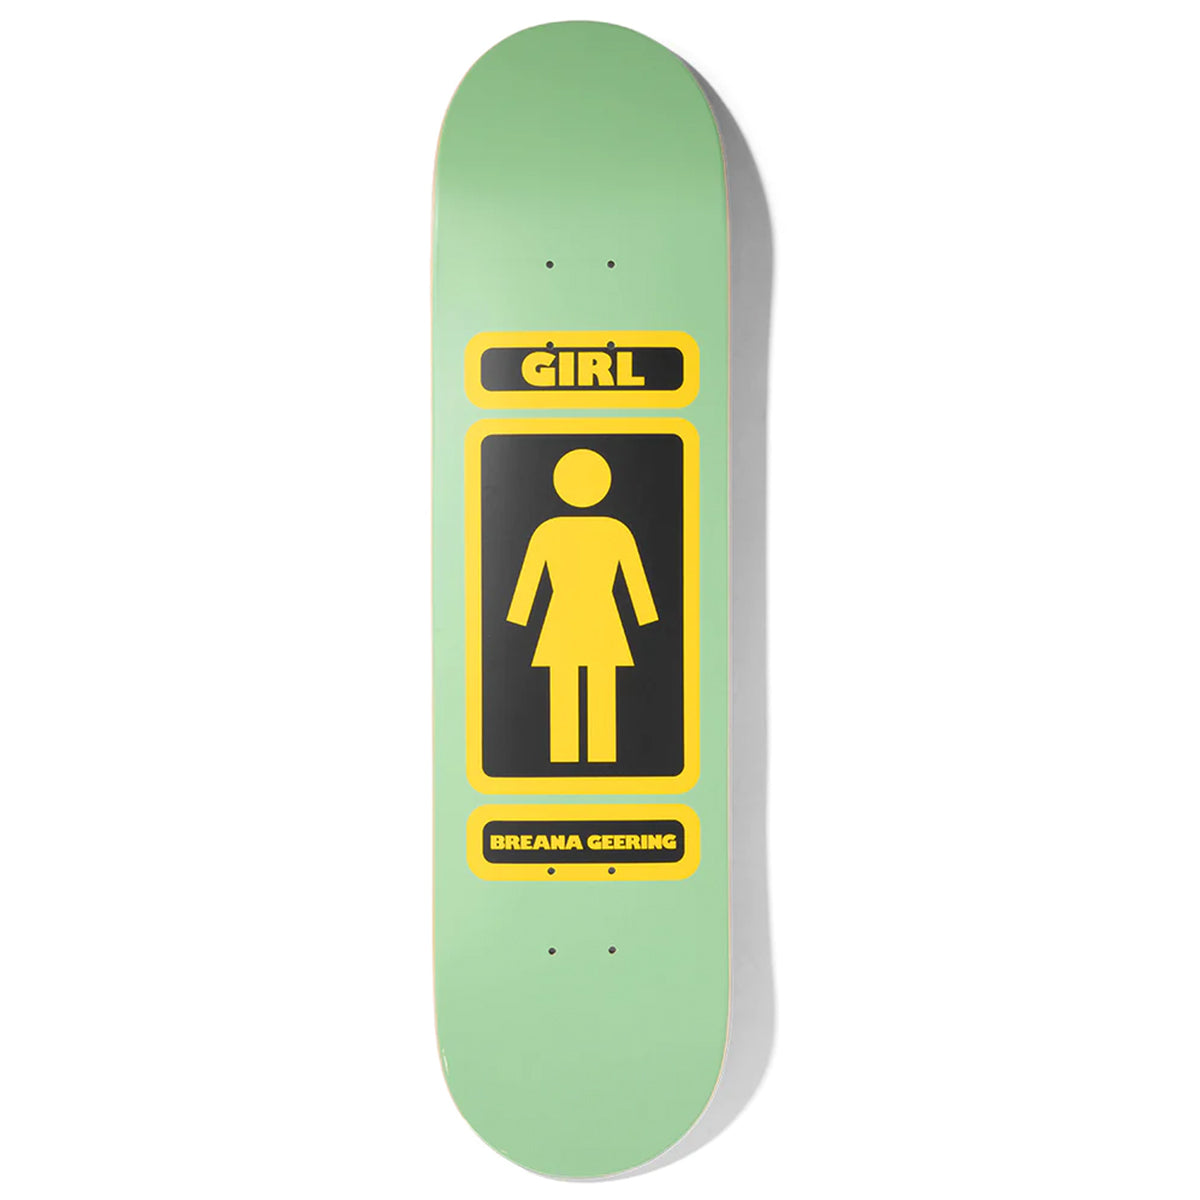 Girl Skateboards